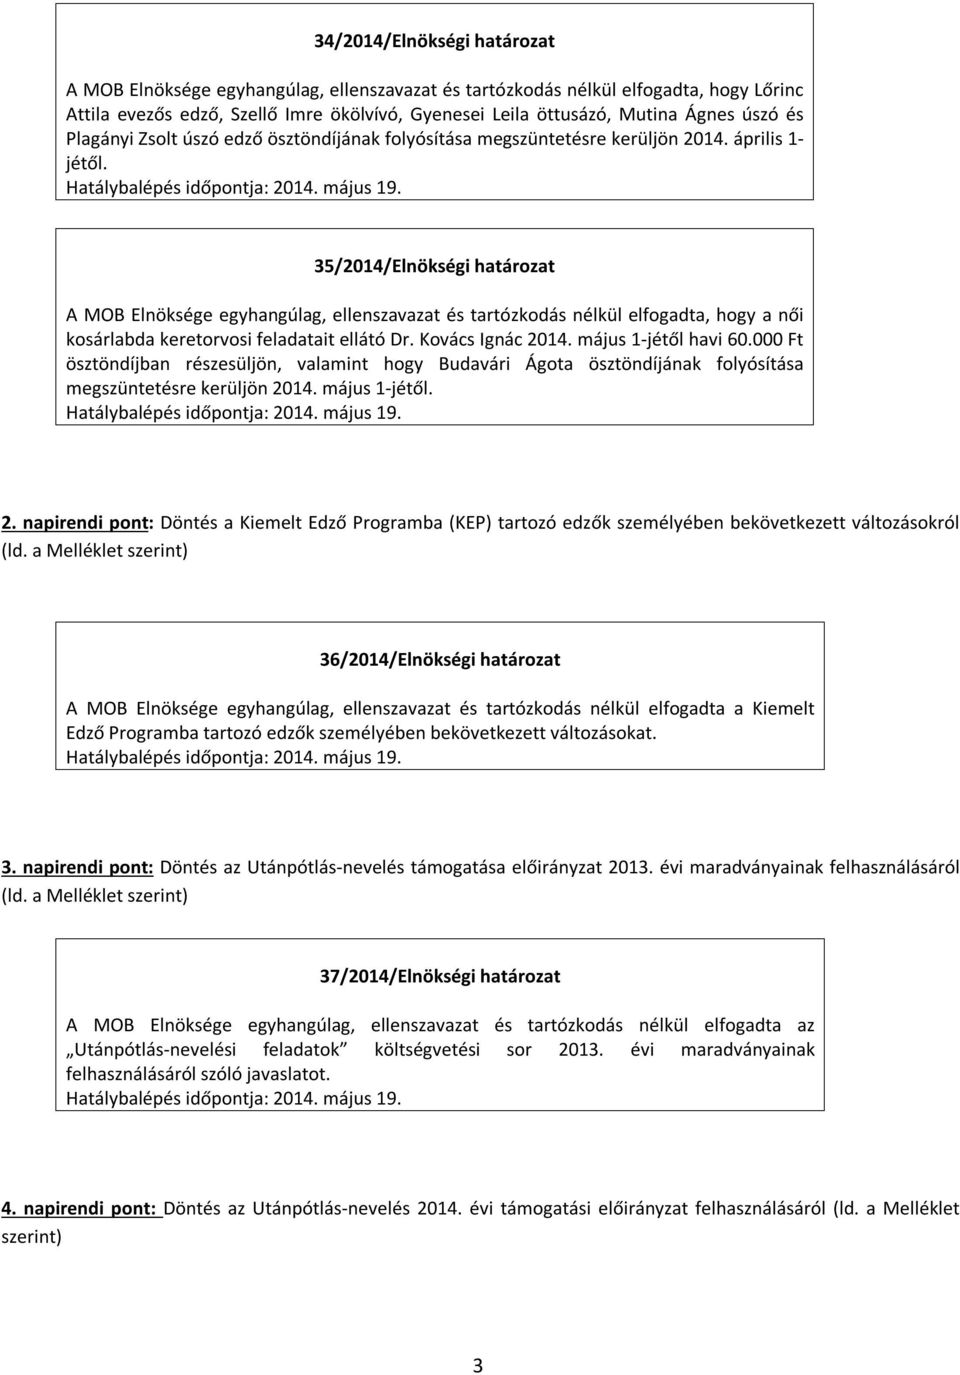 35/2014/Elnökségi határozat A MOB Elnöksége egyhangúlag, ellenszavazat és tartózkodás nélkül elfogadta, hogy a női kosárlabda keretorvosi feladatait ellátó Dr. Kovács Ignác 2014.